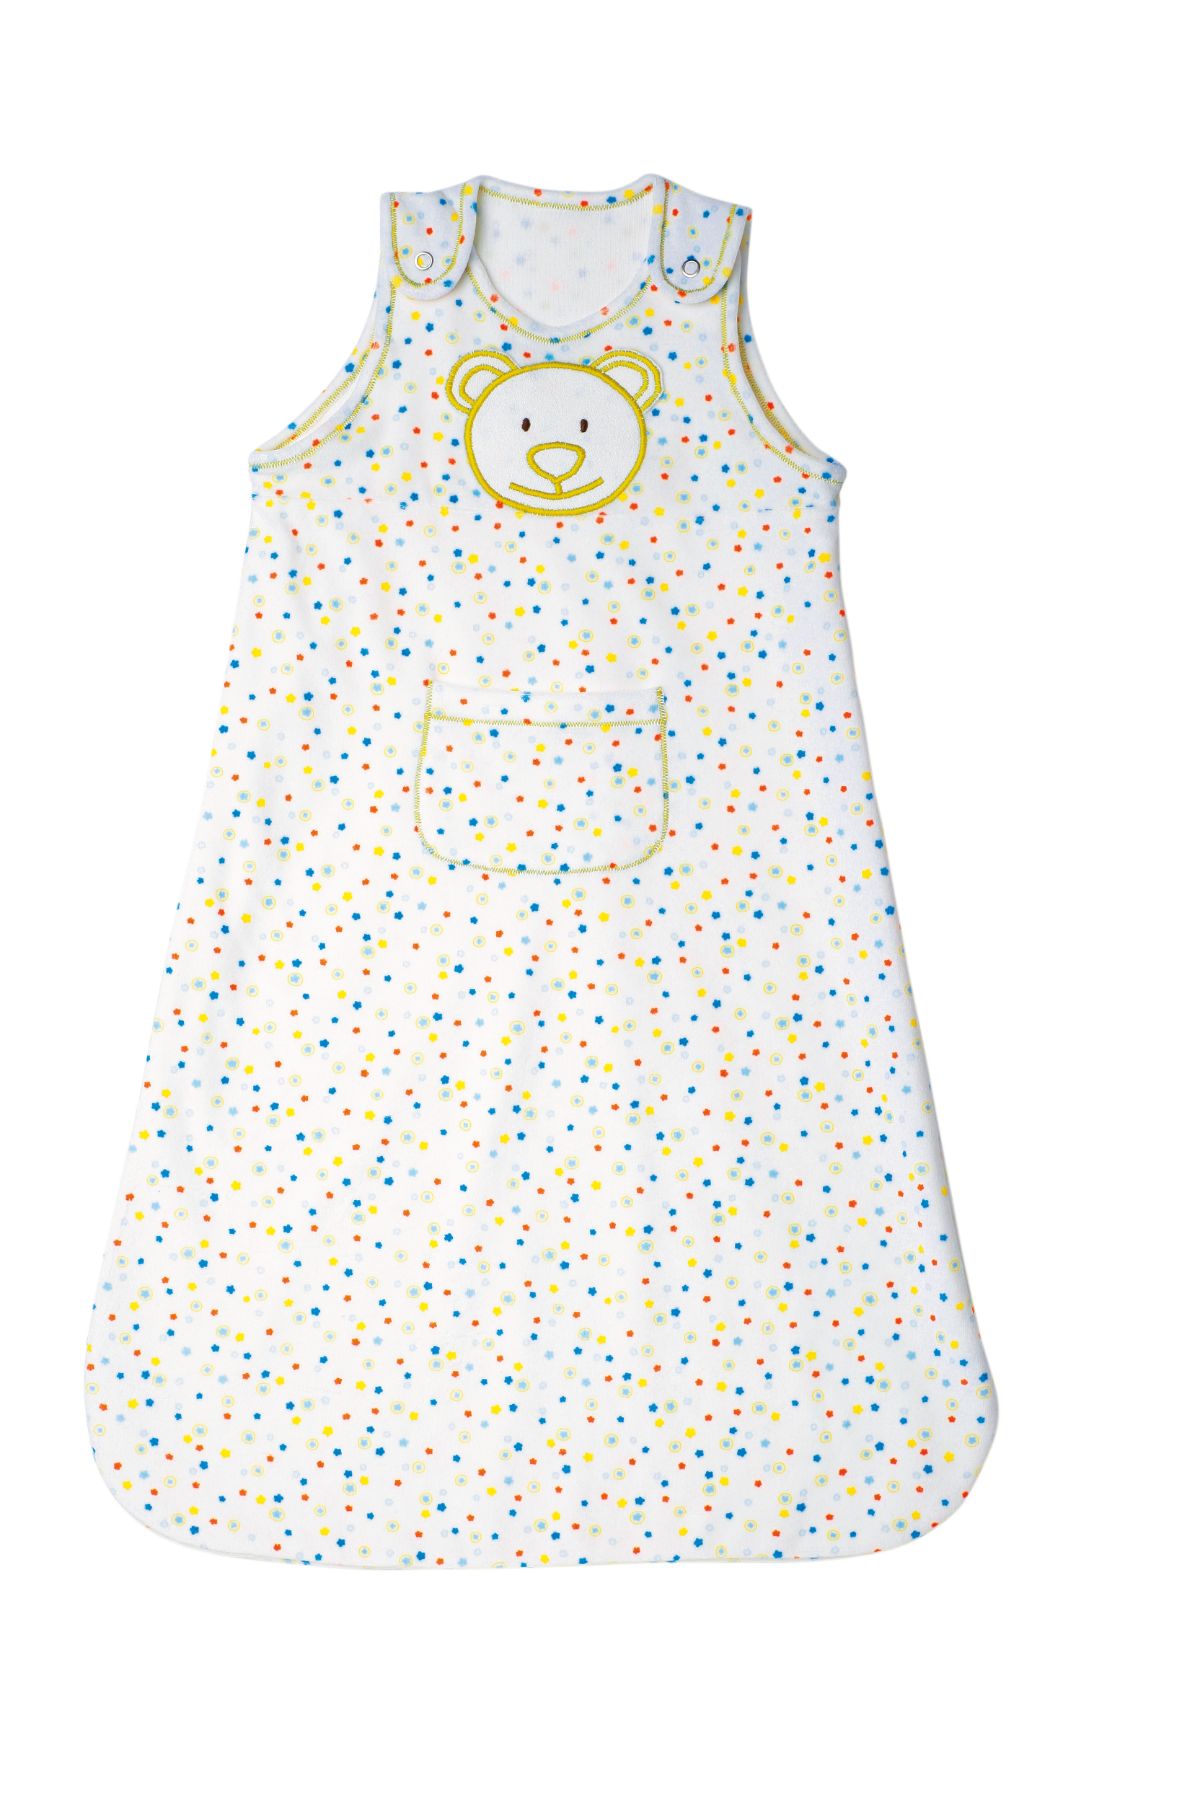 Burda Geel 9635 - Baby accessoires